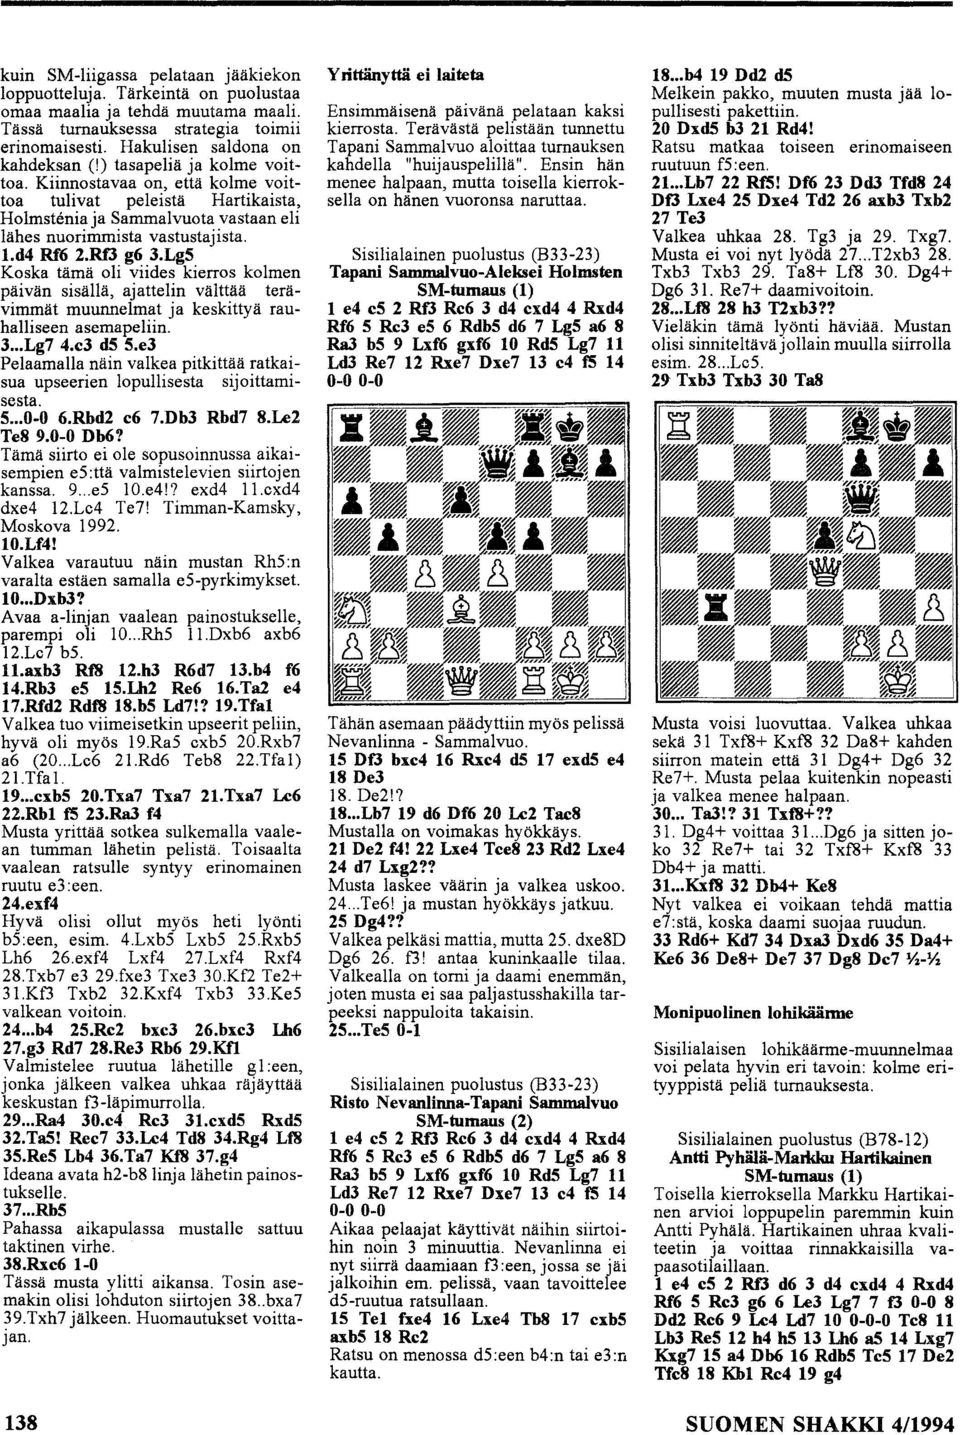 Lg5 Kska tämä li viides kierrs klmen päivän sisällä, ajattelin välttää terävimmät muunnelmat ja keskittyä rauhalliseen asemapeliin. 3... Lg7 4.e3 d5 5.